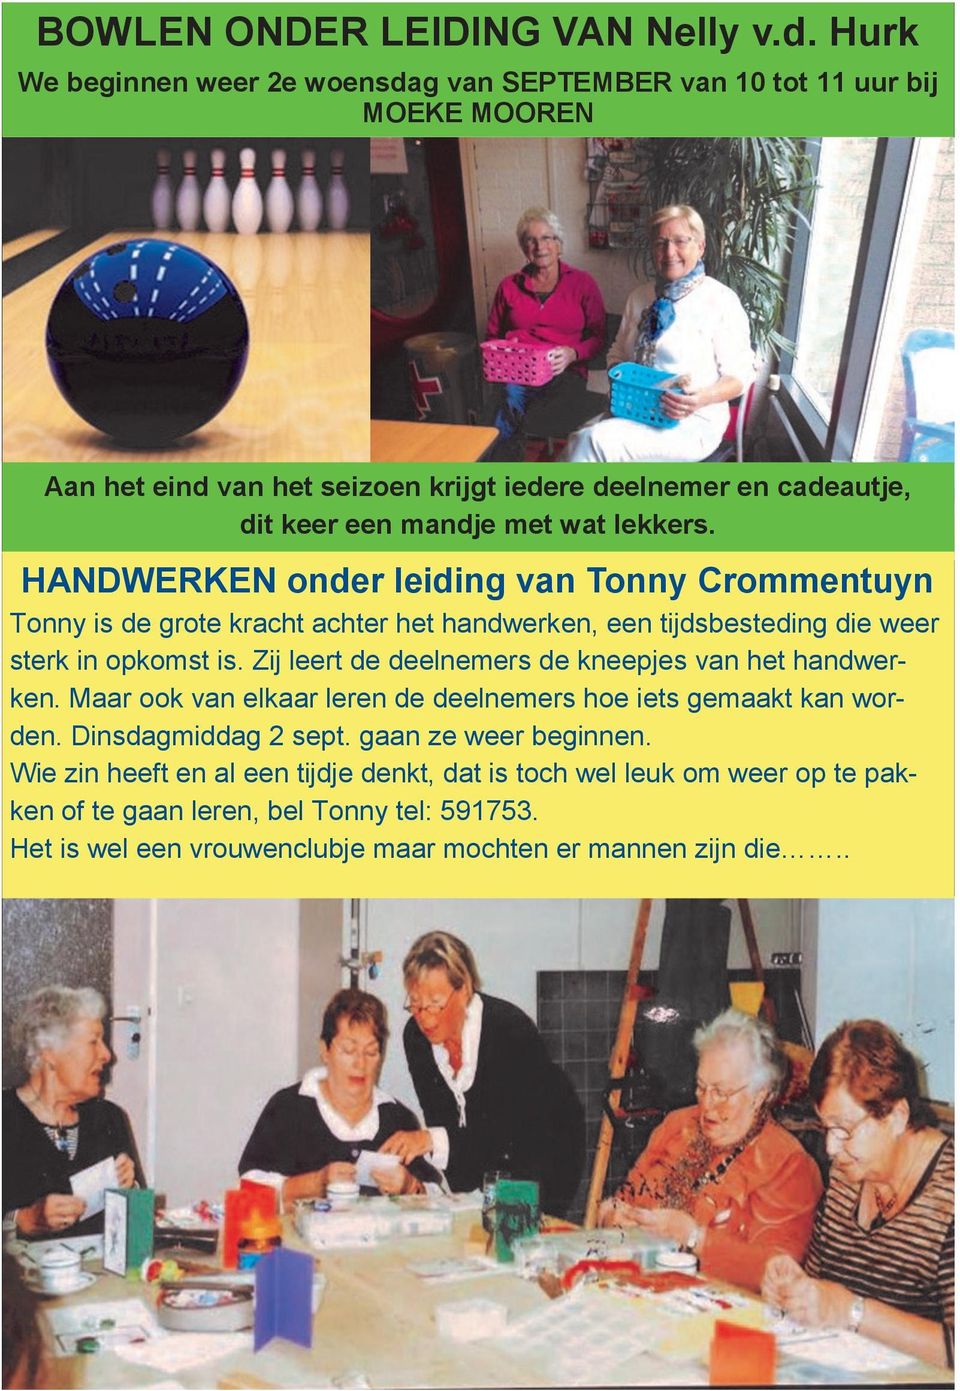 lekkers. HANDWERKEN onder leiding van Tonny Crommentuyn Tonny is de grote kracht achter het handwerken, een tijdsbesteding die weer sterk in opkomst is.